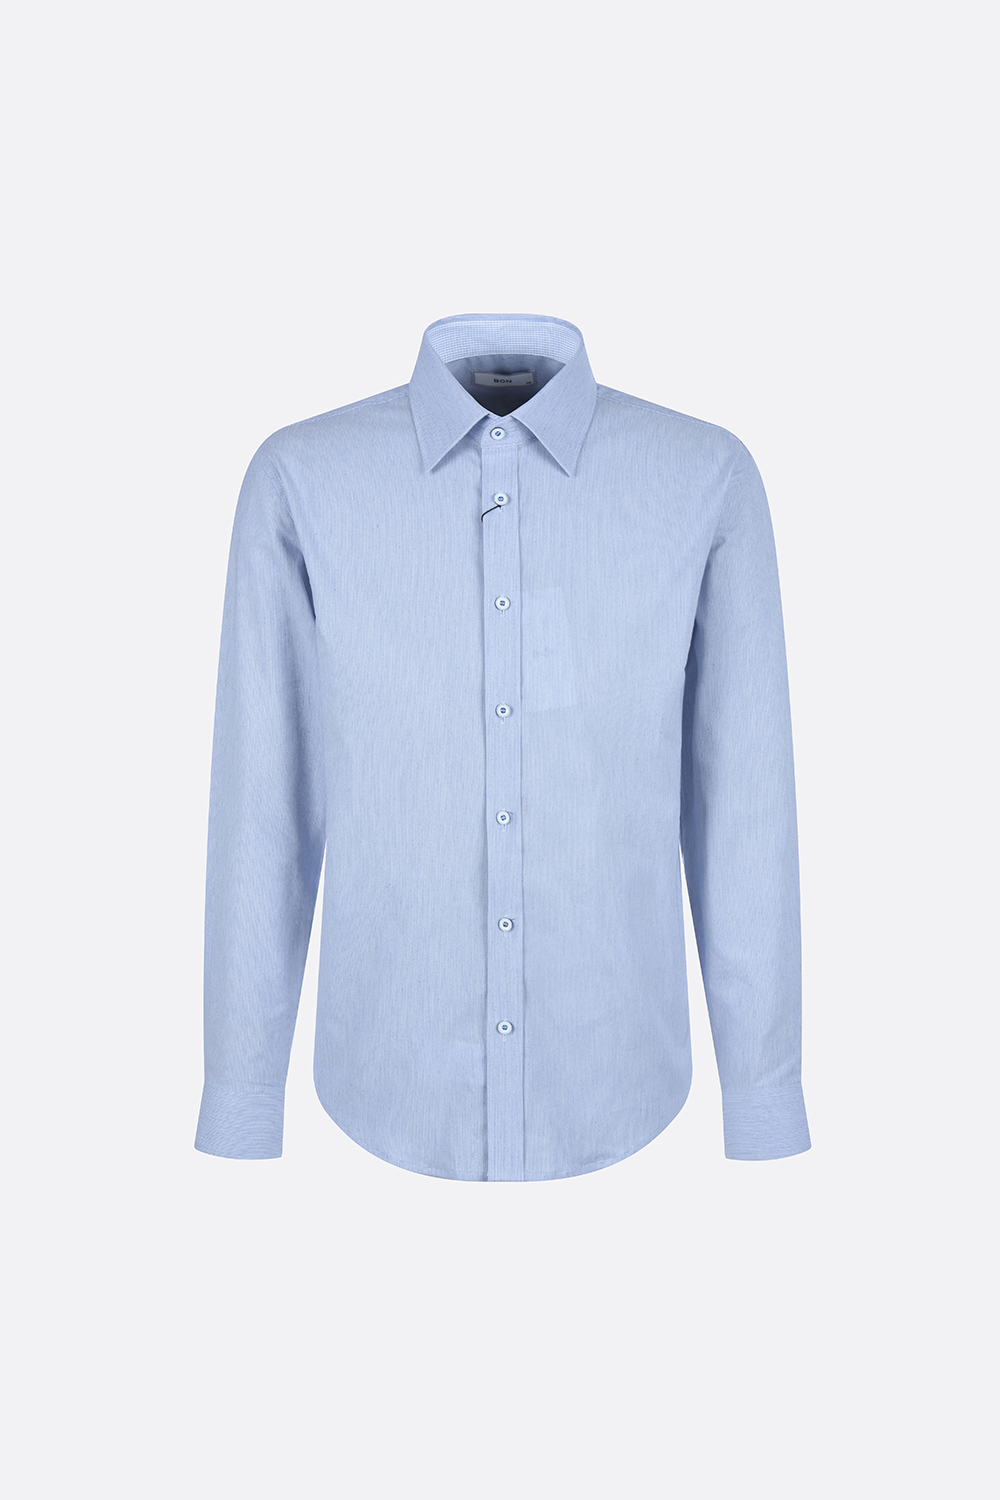 [공식스토어] 본 멜란지 면 스판 세미 드레스 셔츠 블루 BN2SBA357BL